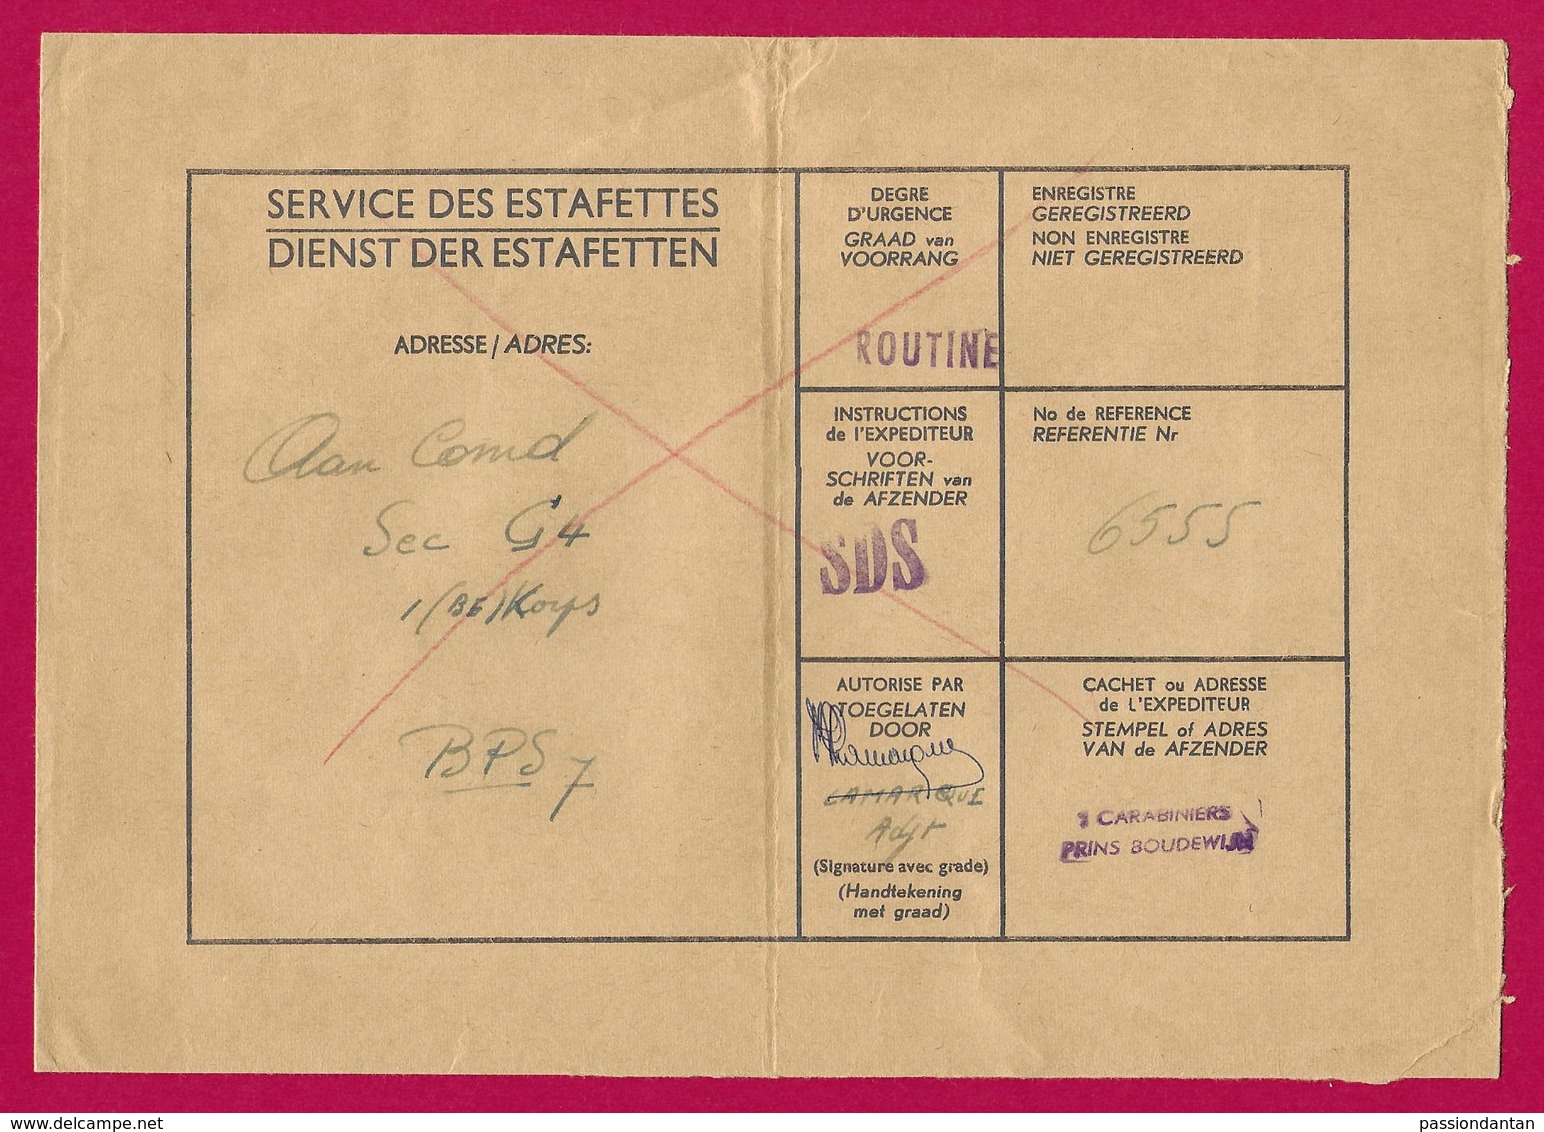 Enveloppe Du Service Des Estafettes Belges Datée De 1965 - Expédiée Du 1er Carabiniers Prins Boudewijn - Armeestempel